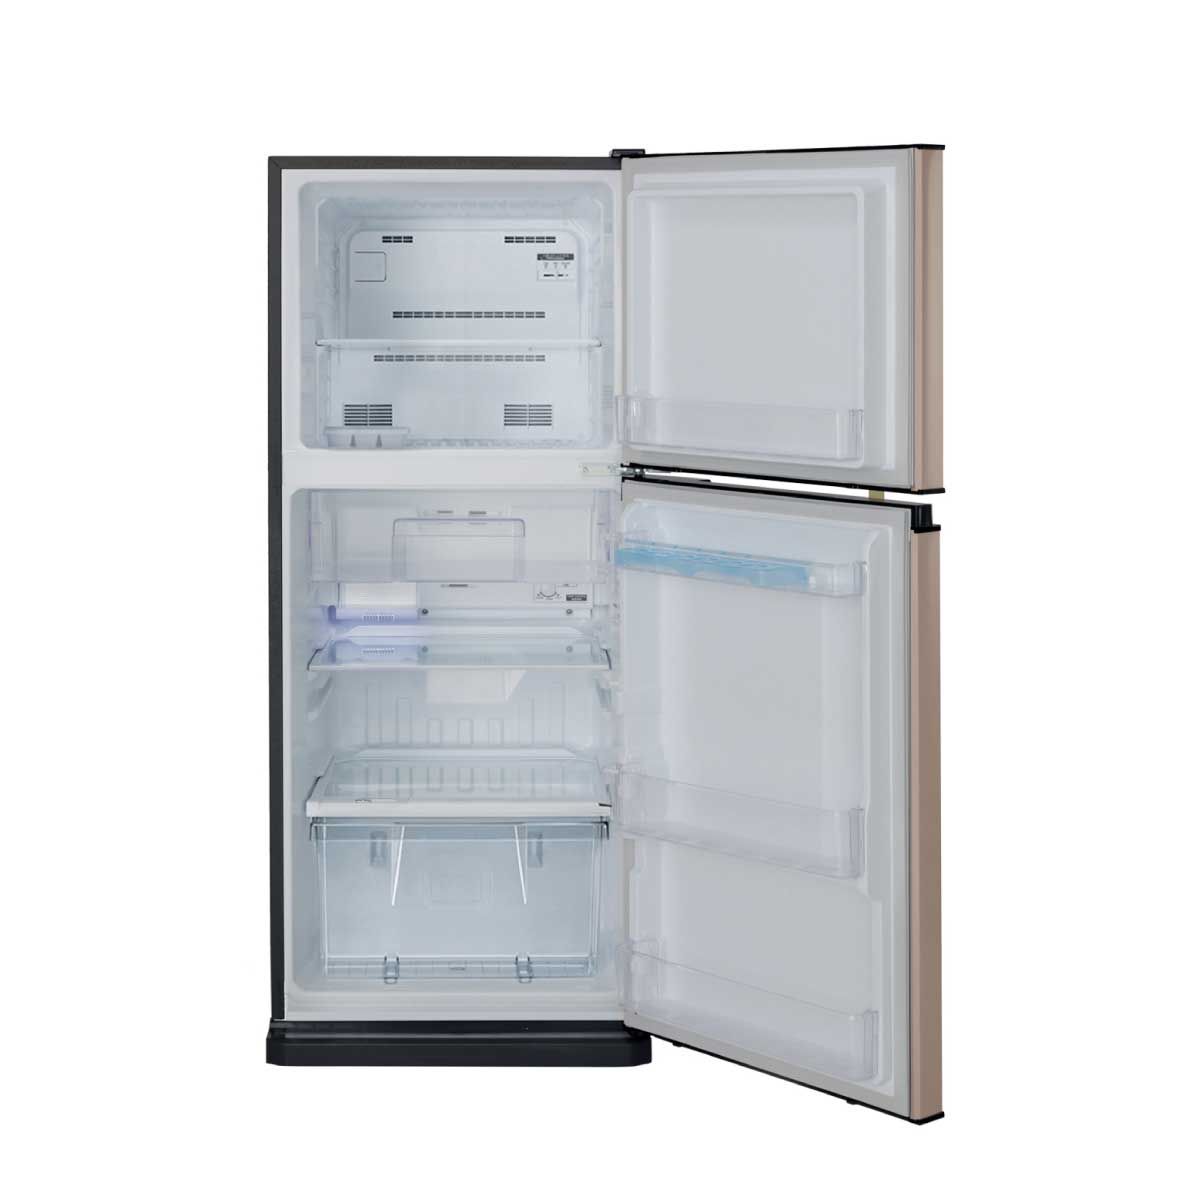 MITSUBISHI ELECTRIC ตู้เย็น2ประตู7.3คิว MINUS ION สีทองชมพู รุ่นMR-FV22T